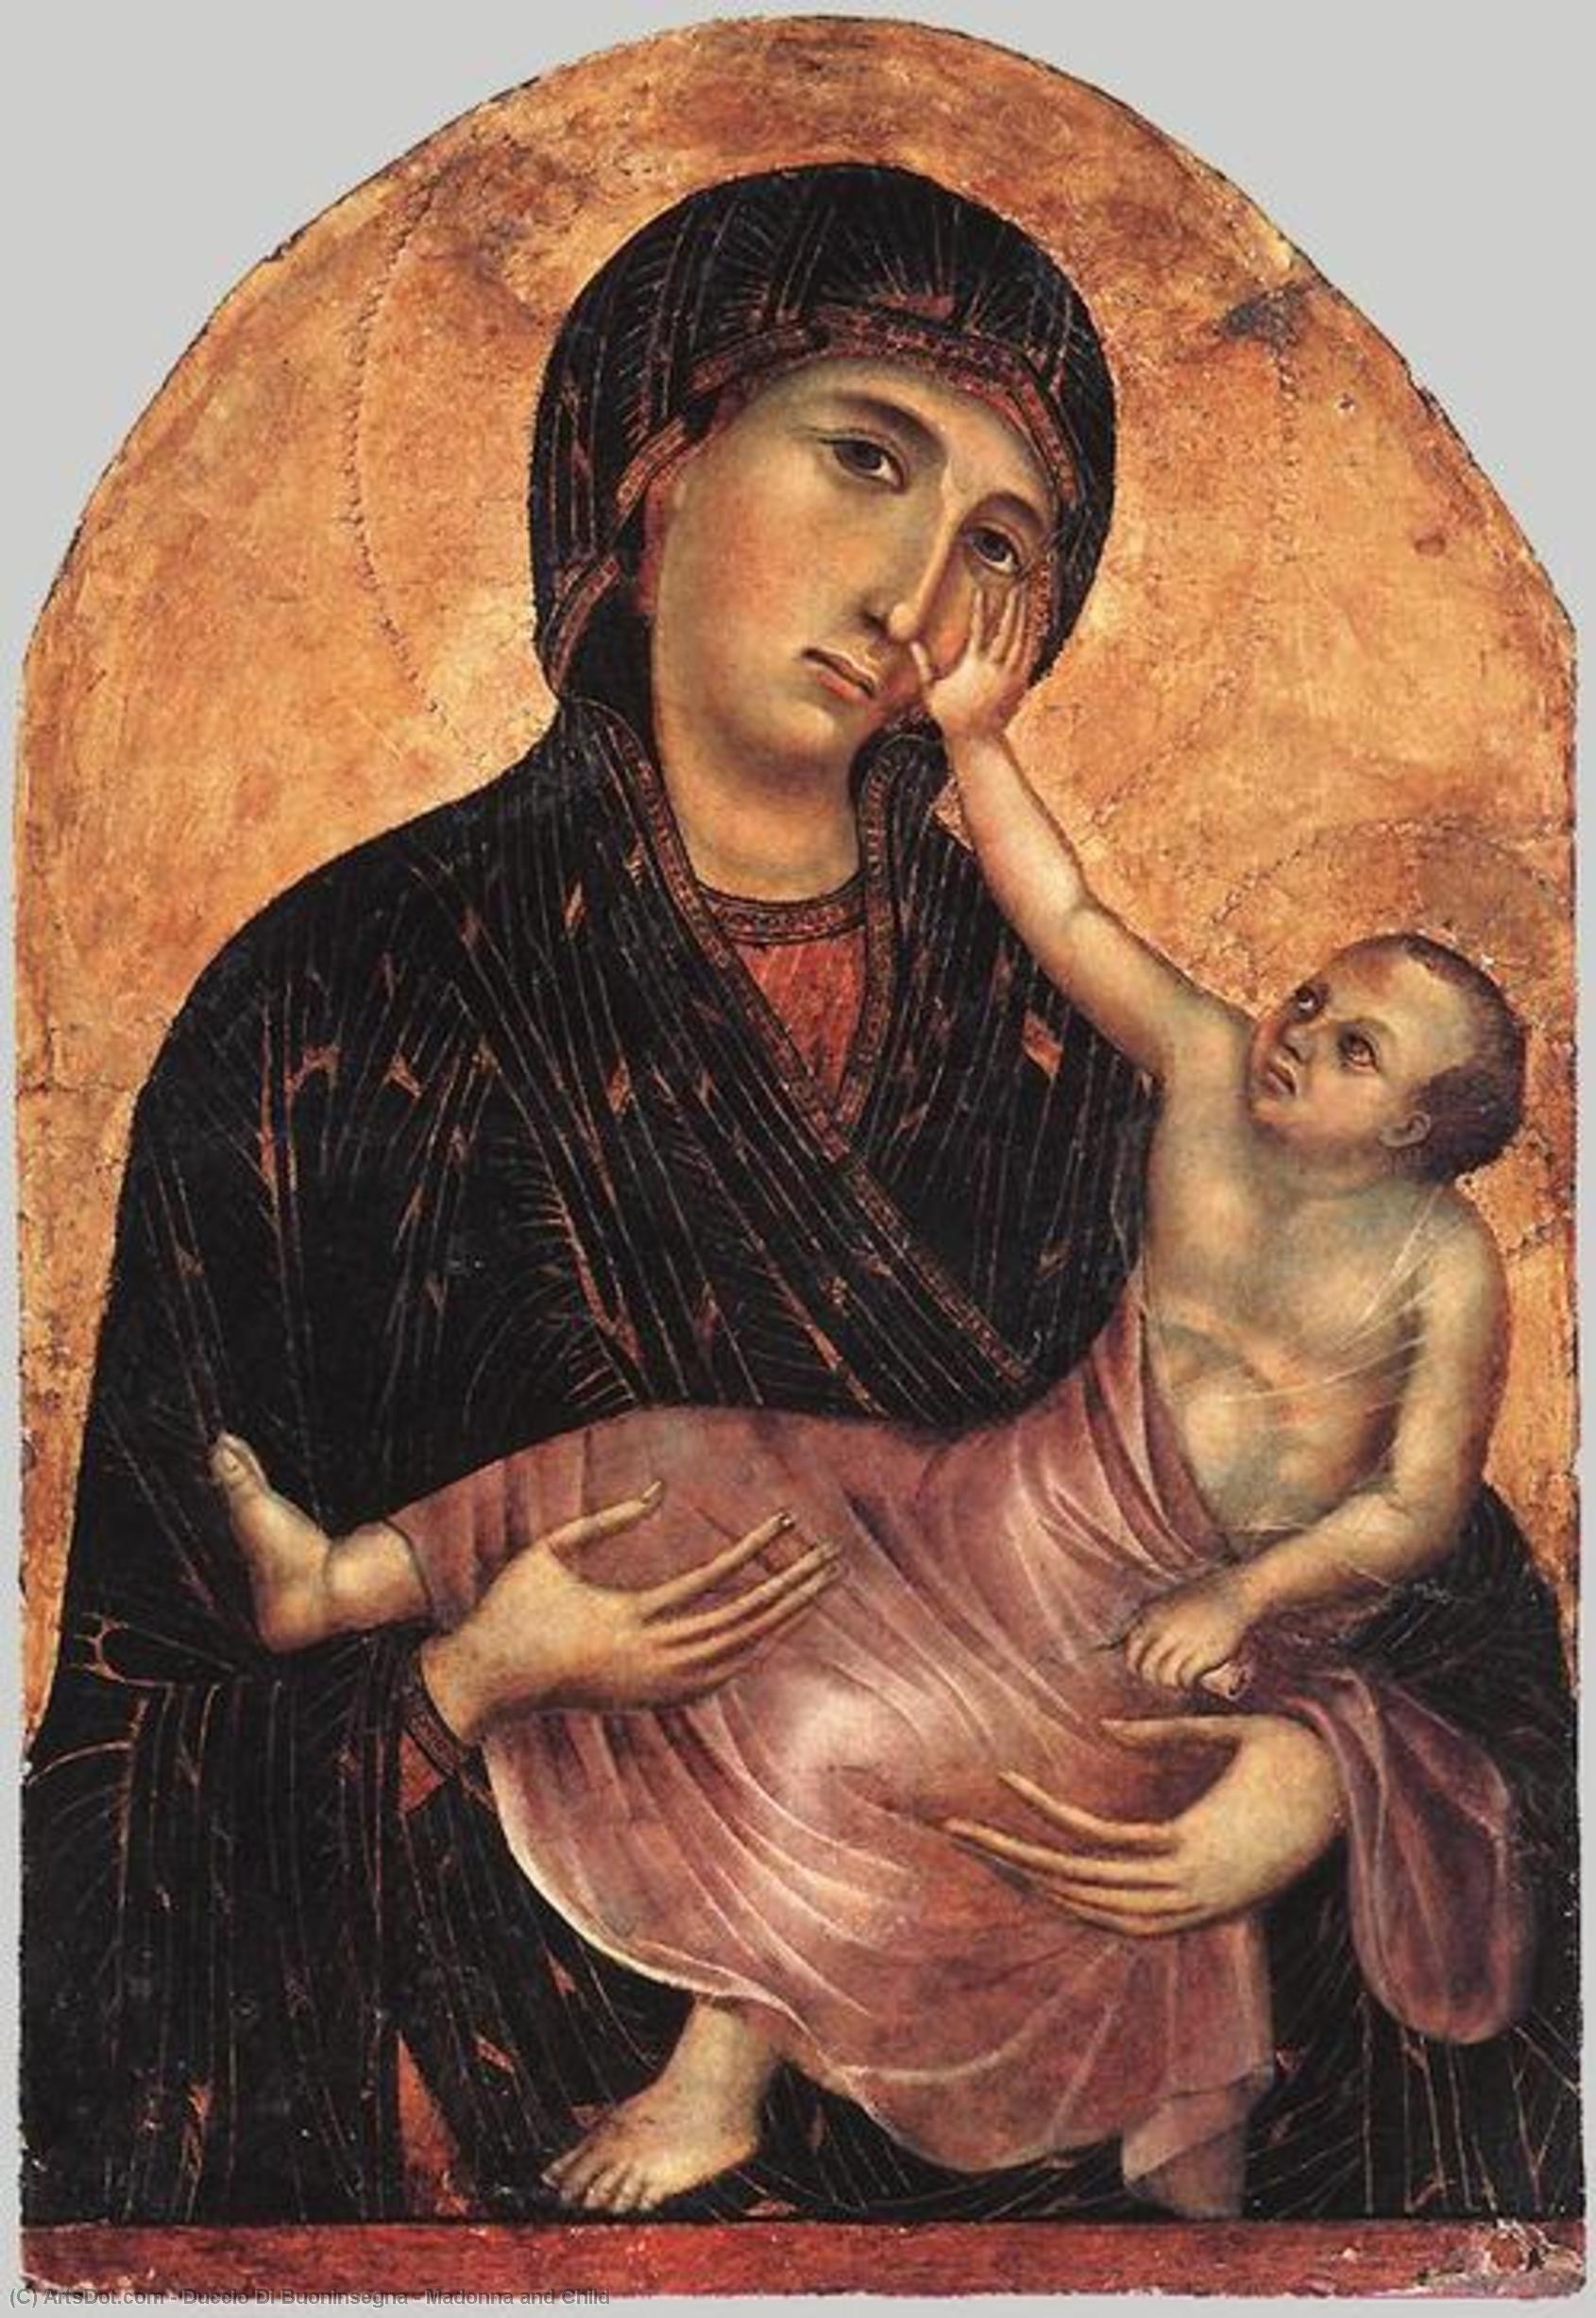 WikiOO.org - Encyclopedia of Fine Arts - Lukisan, Artwork Duccio Di Buoninsegna - Madonna and Child